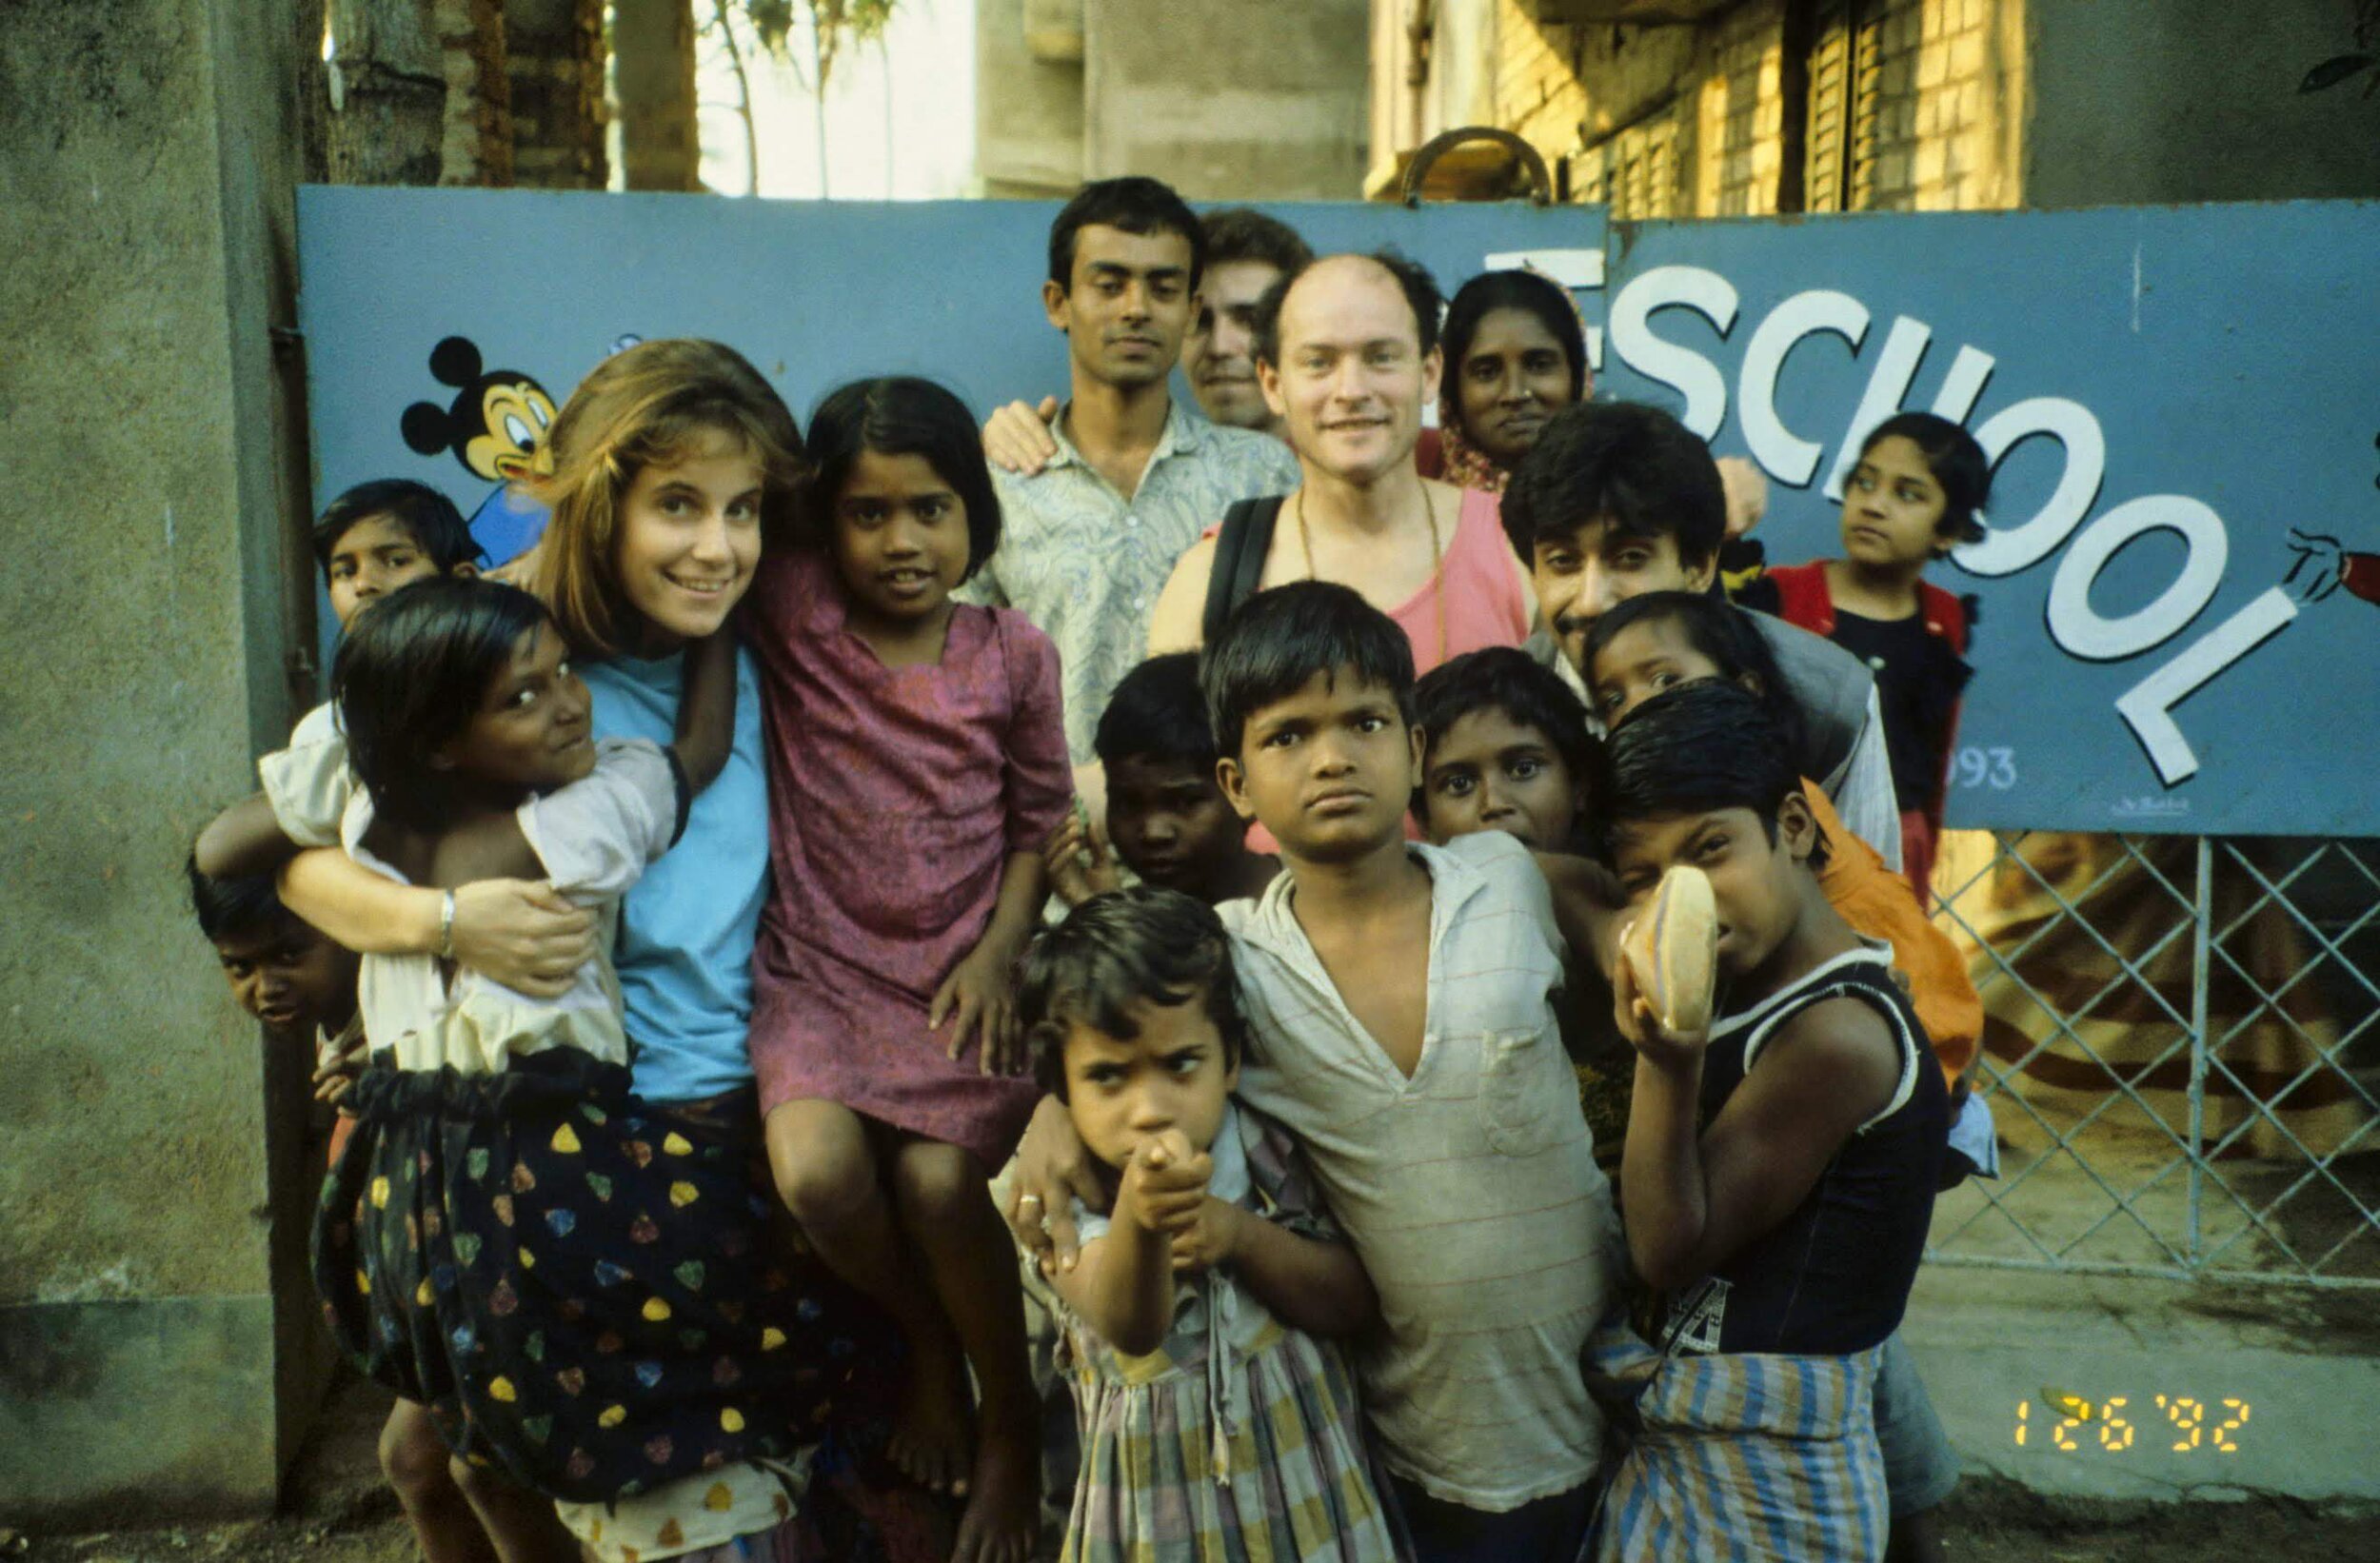 Calcutta.1992.St.Clair.jpg